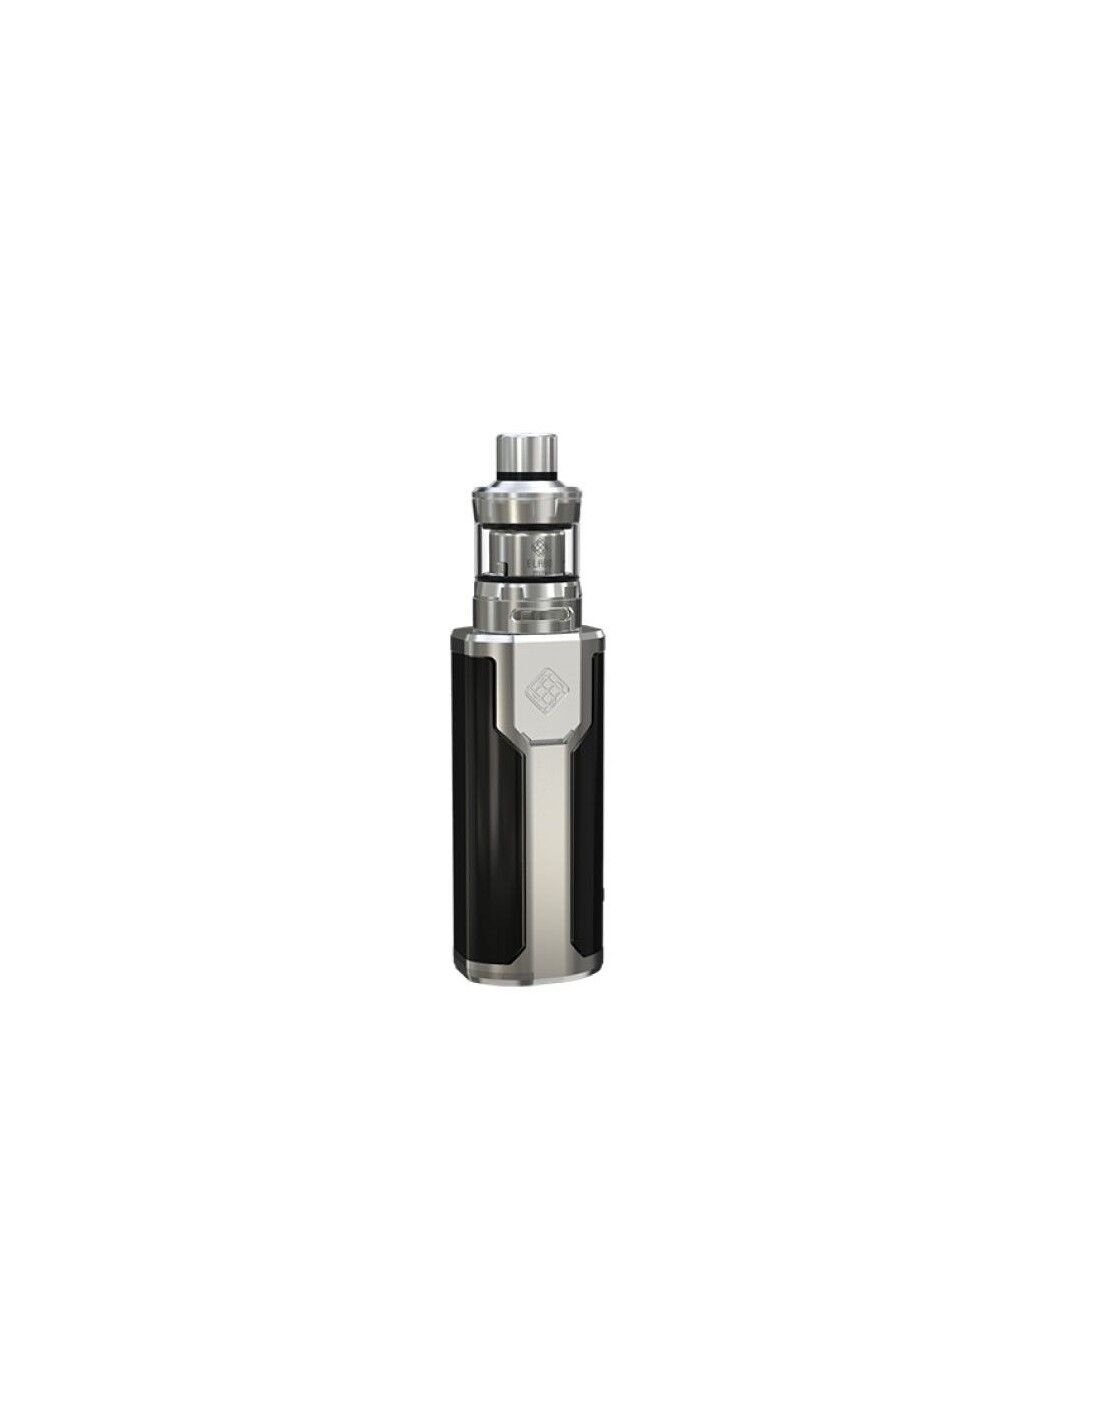 Wismec Sinuos P80 + Elabo Mini Kit Con Atomizzatore Integrato Sigaretta Elettronica